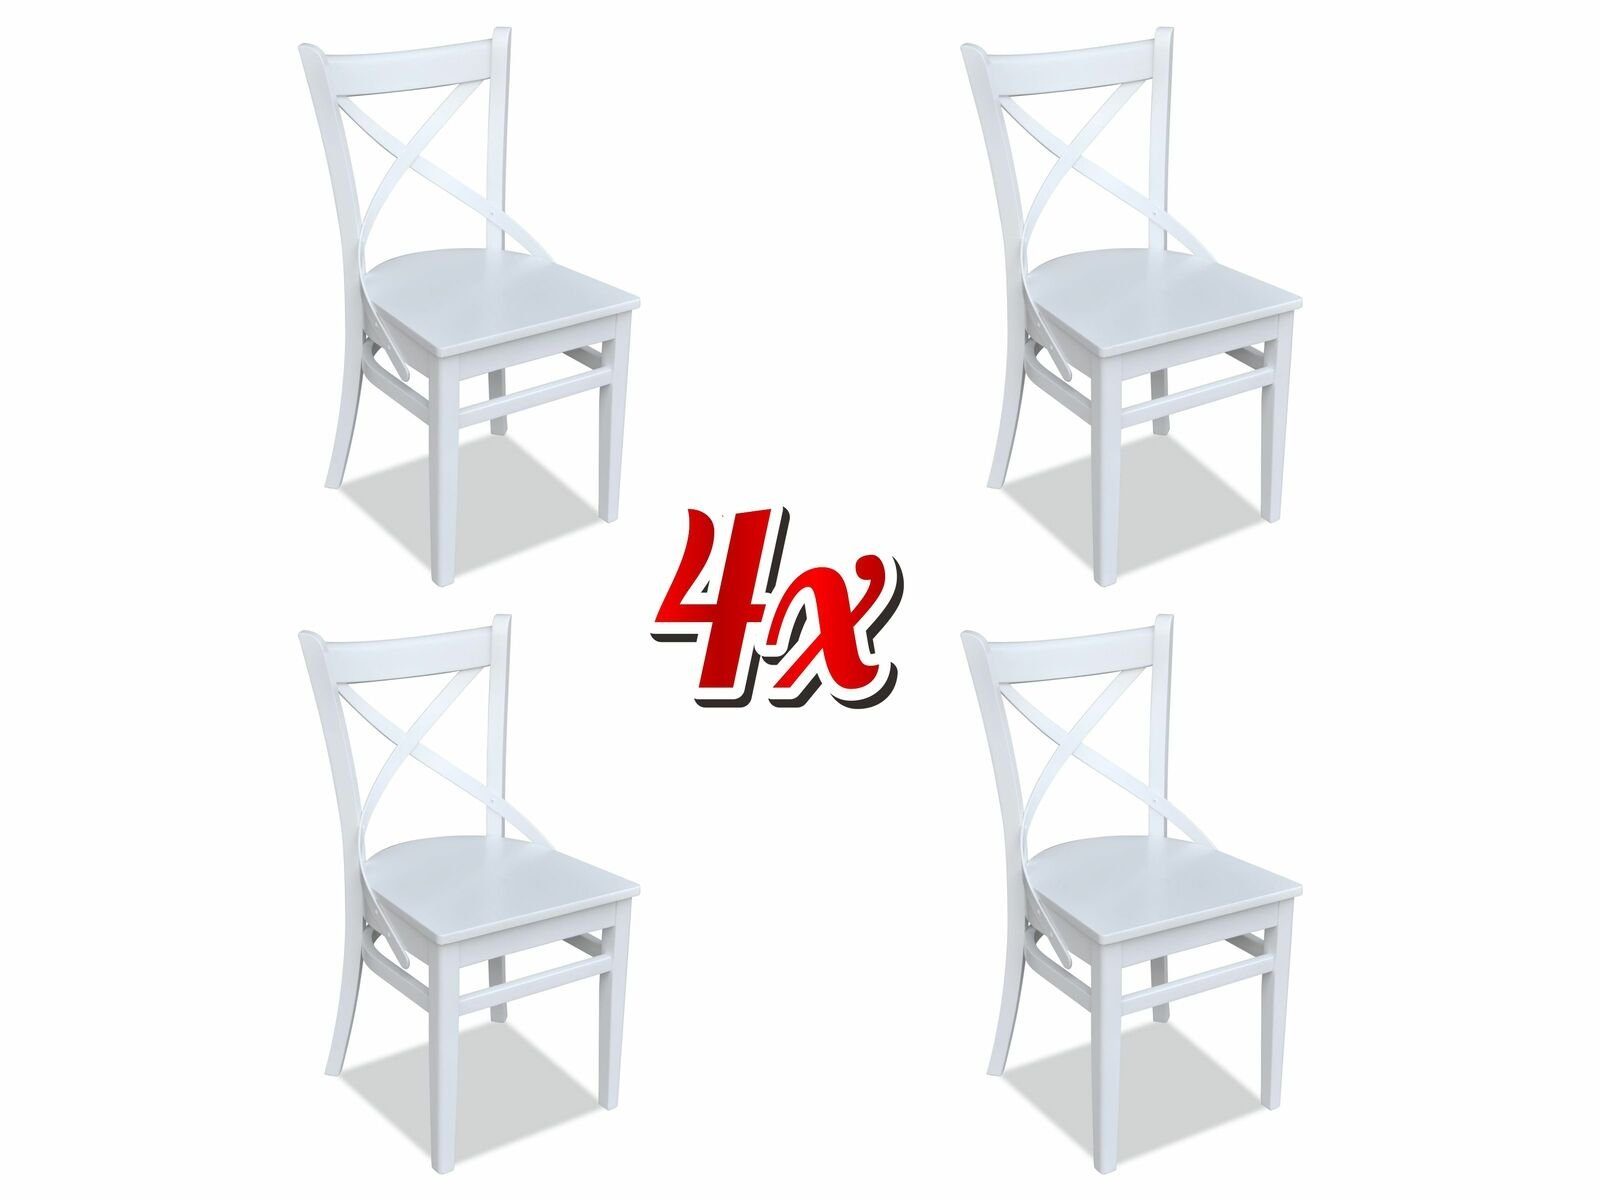 Sitz Textil Set Stuhl, Moderne Design Garnitur Zimmer Ess Holz JVmoebel Stuhl Polster Stühle 4x